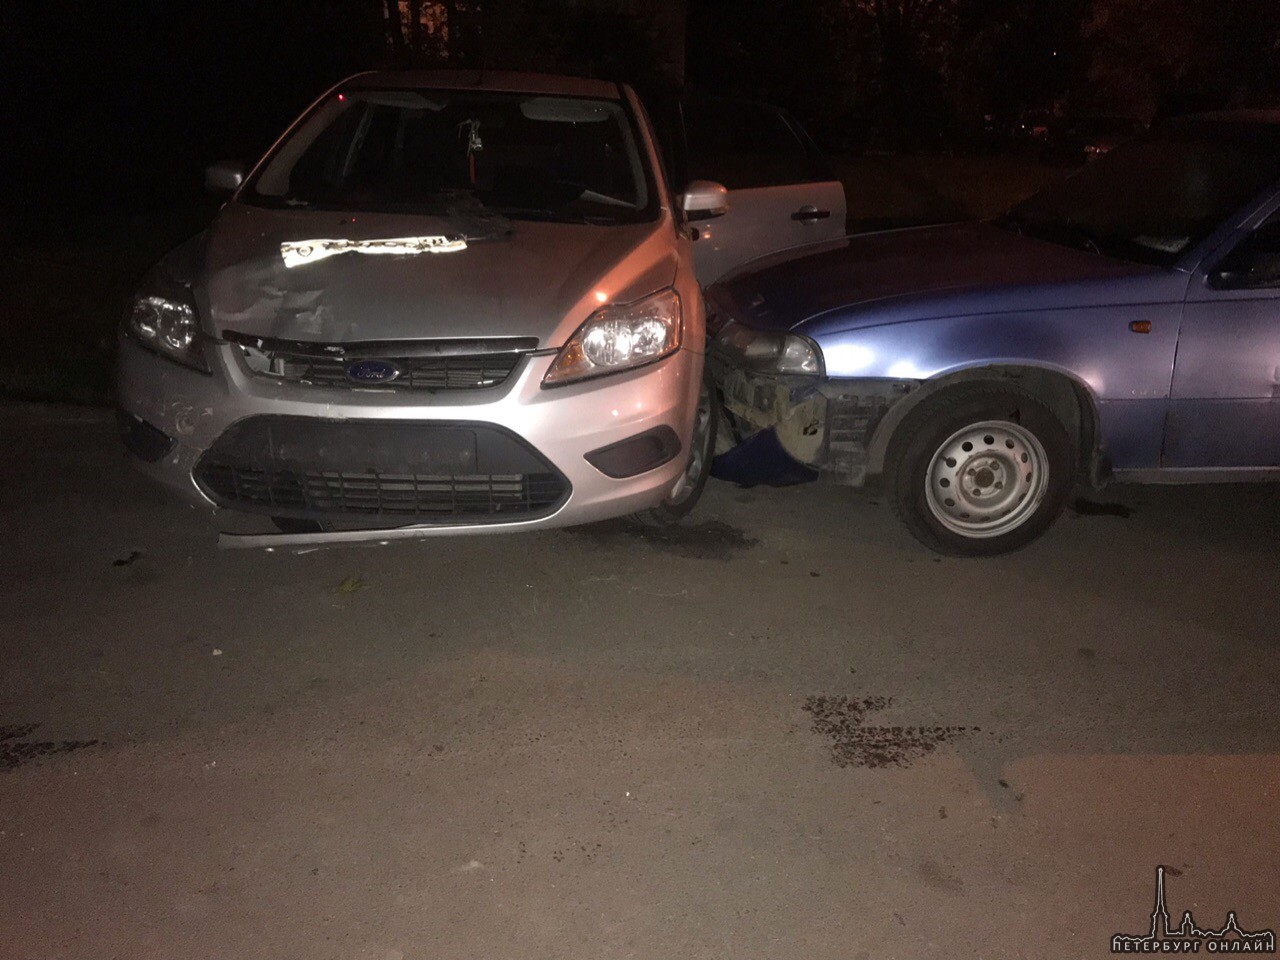 Во дворе на Белградской 44 водитель с признаками САО разбил 5 машин. Убежал через заднюю дверь.